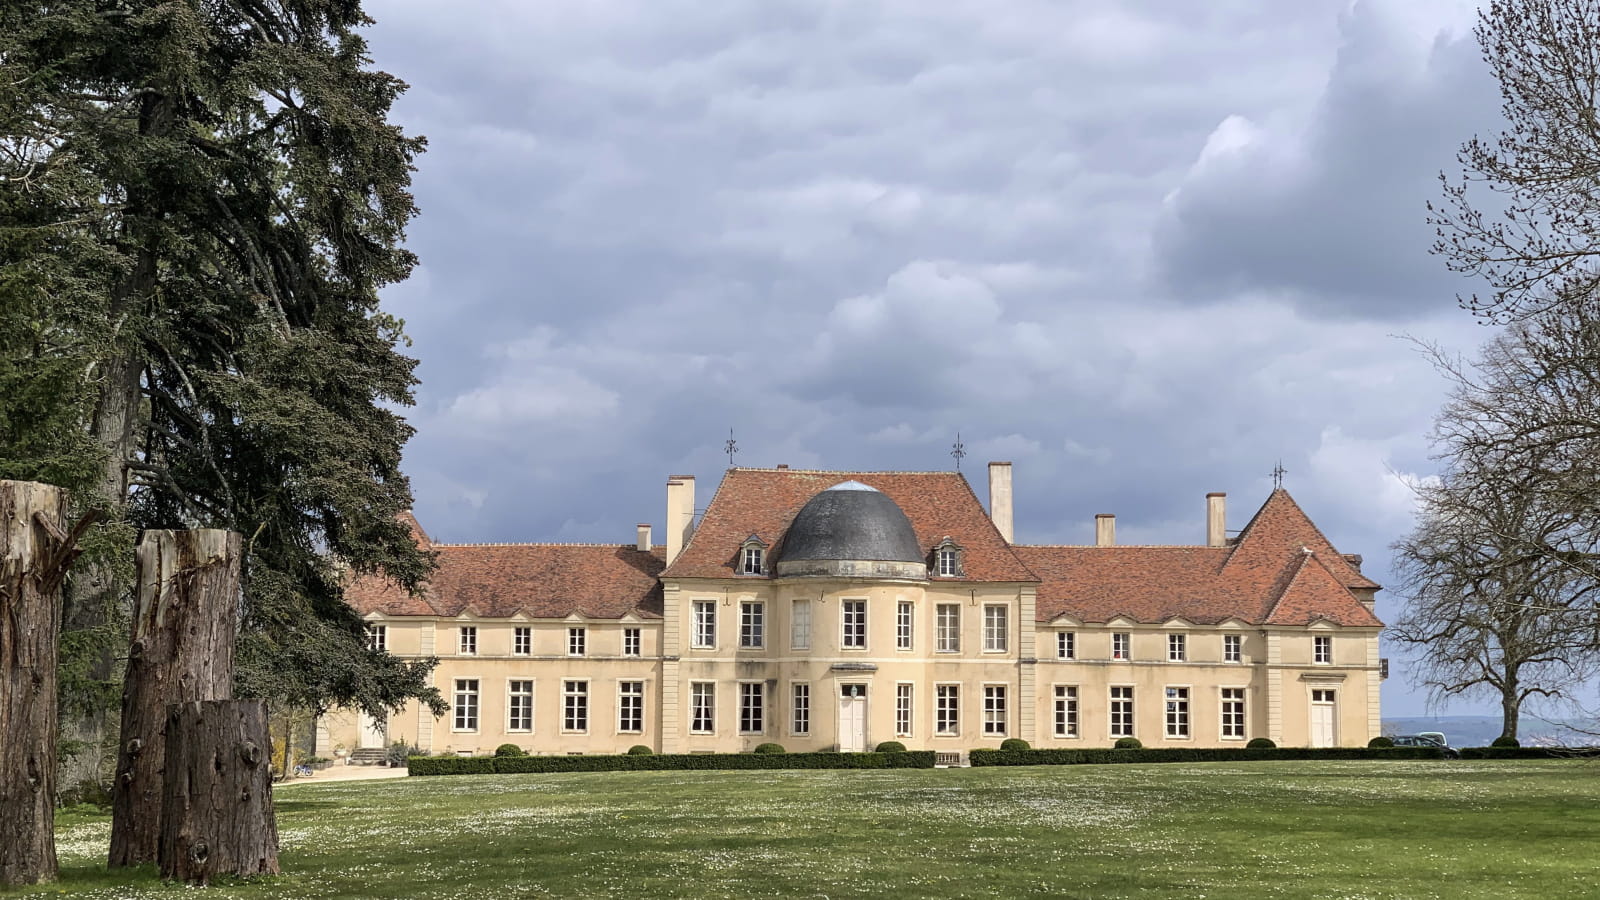 Journées européennes du patrimoine : Château et jardin potager de Lantilly